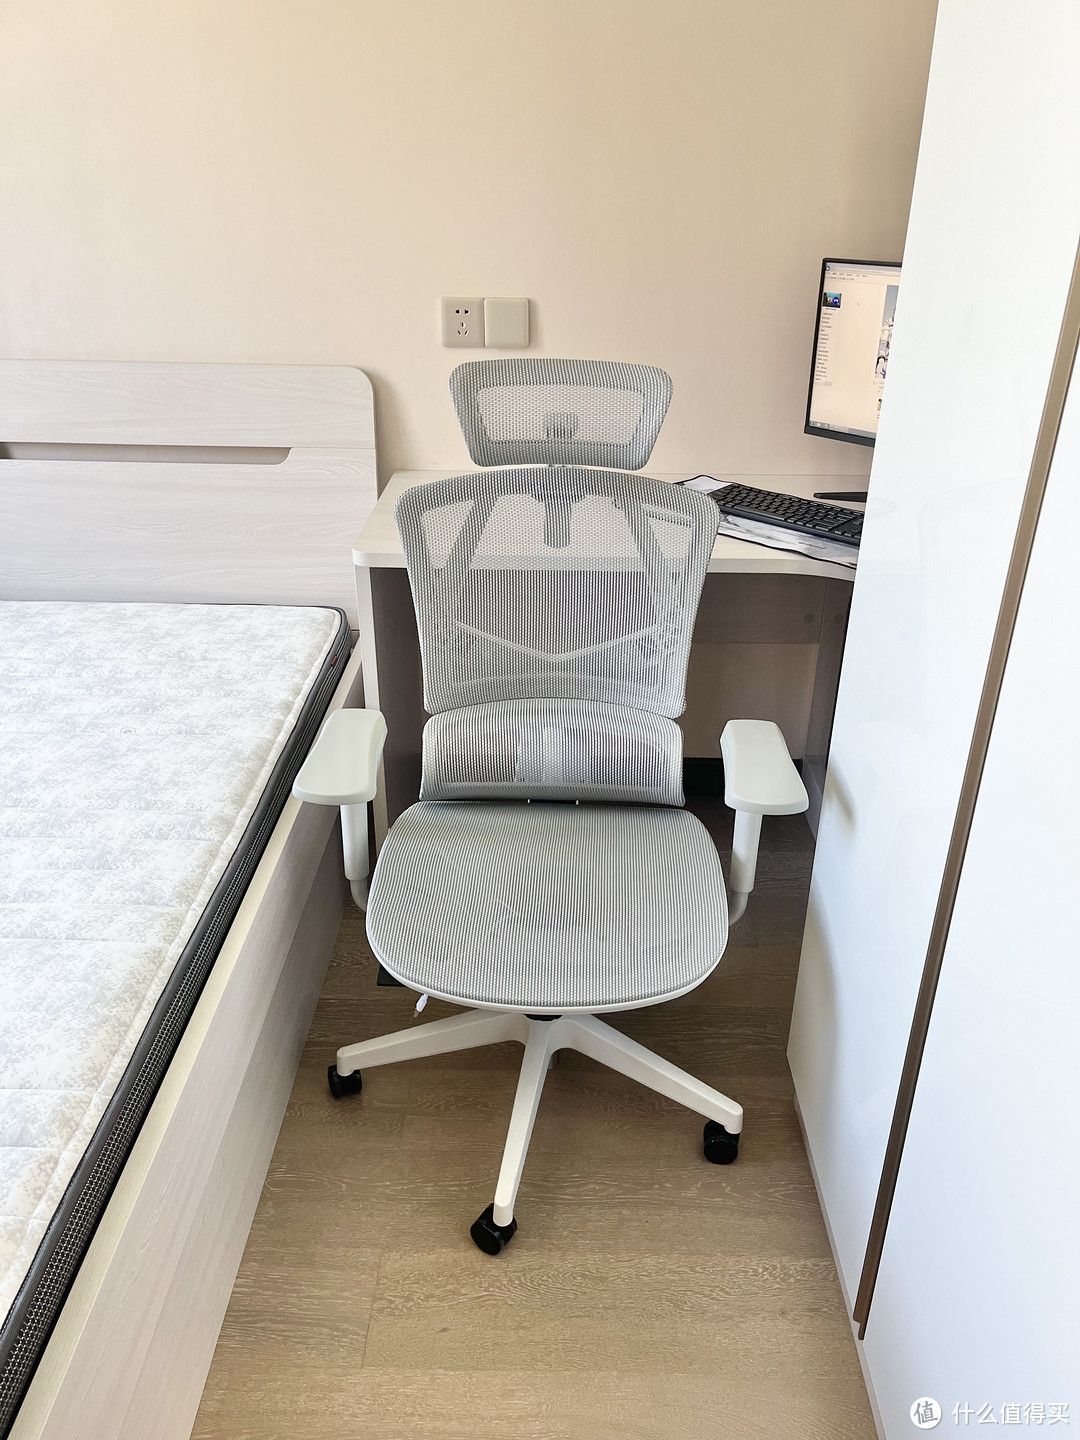 小空间也能从容使用的西昊 Vito S版人体工程学座椅